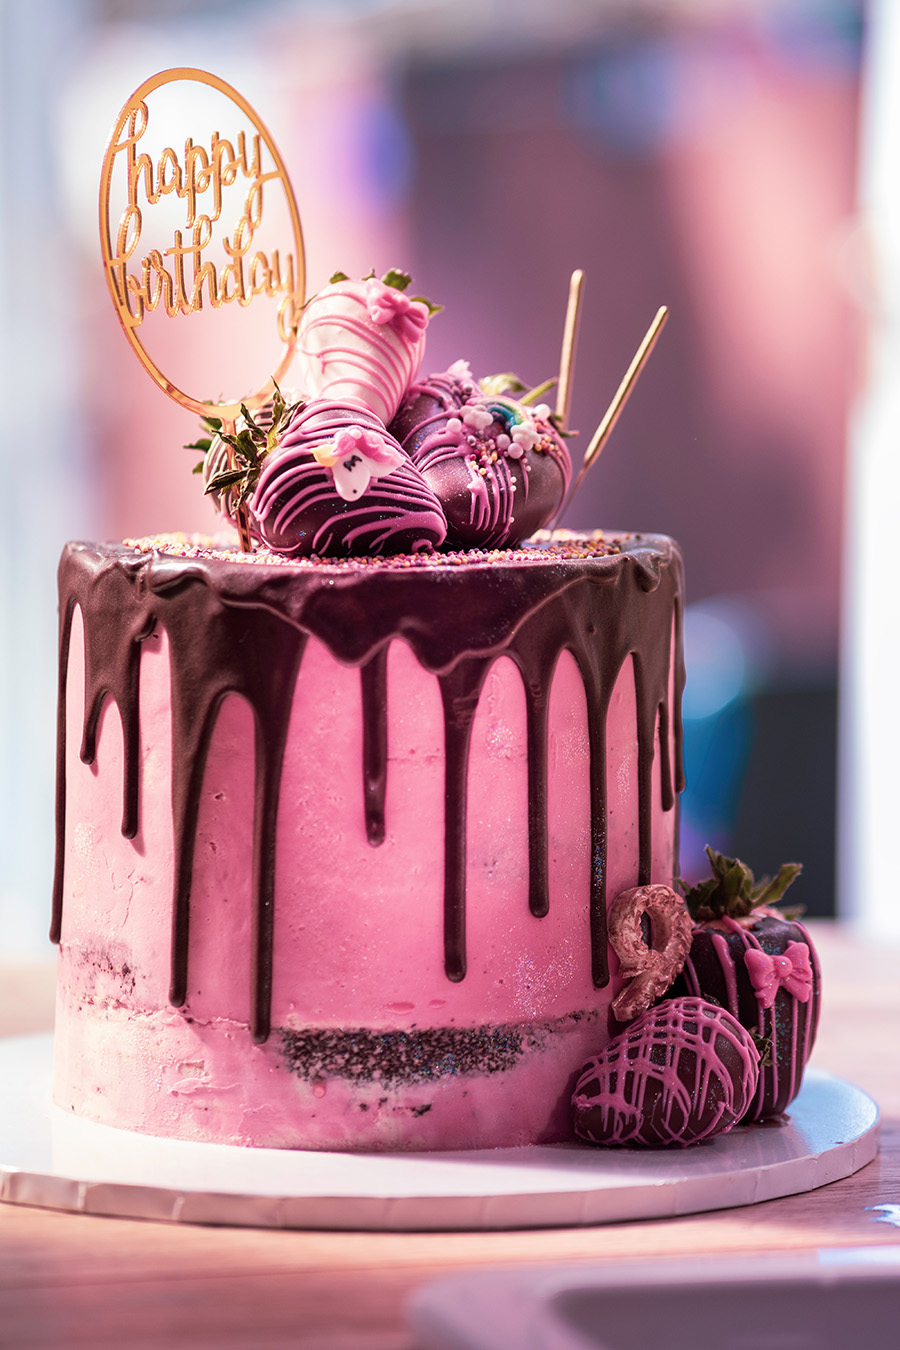 Birthdays and Events Cakes Desserts Savories hOLa Keto Dubai Abu Dhabi Sharjah Fujairah Ajman Al Ain UAE